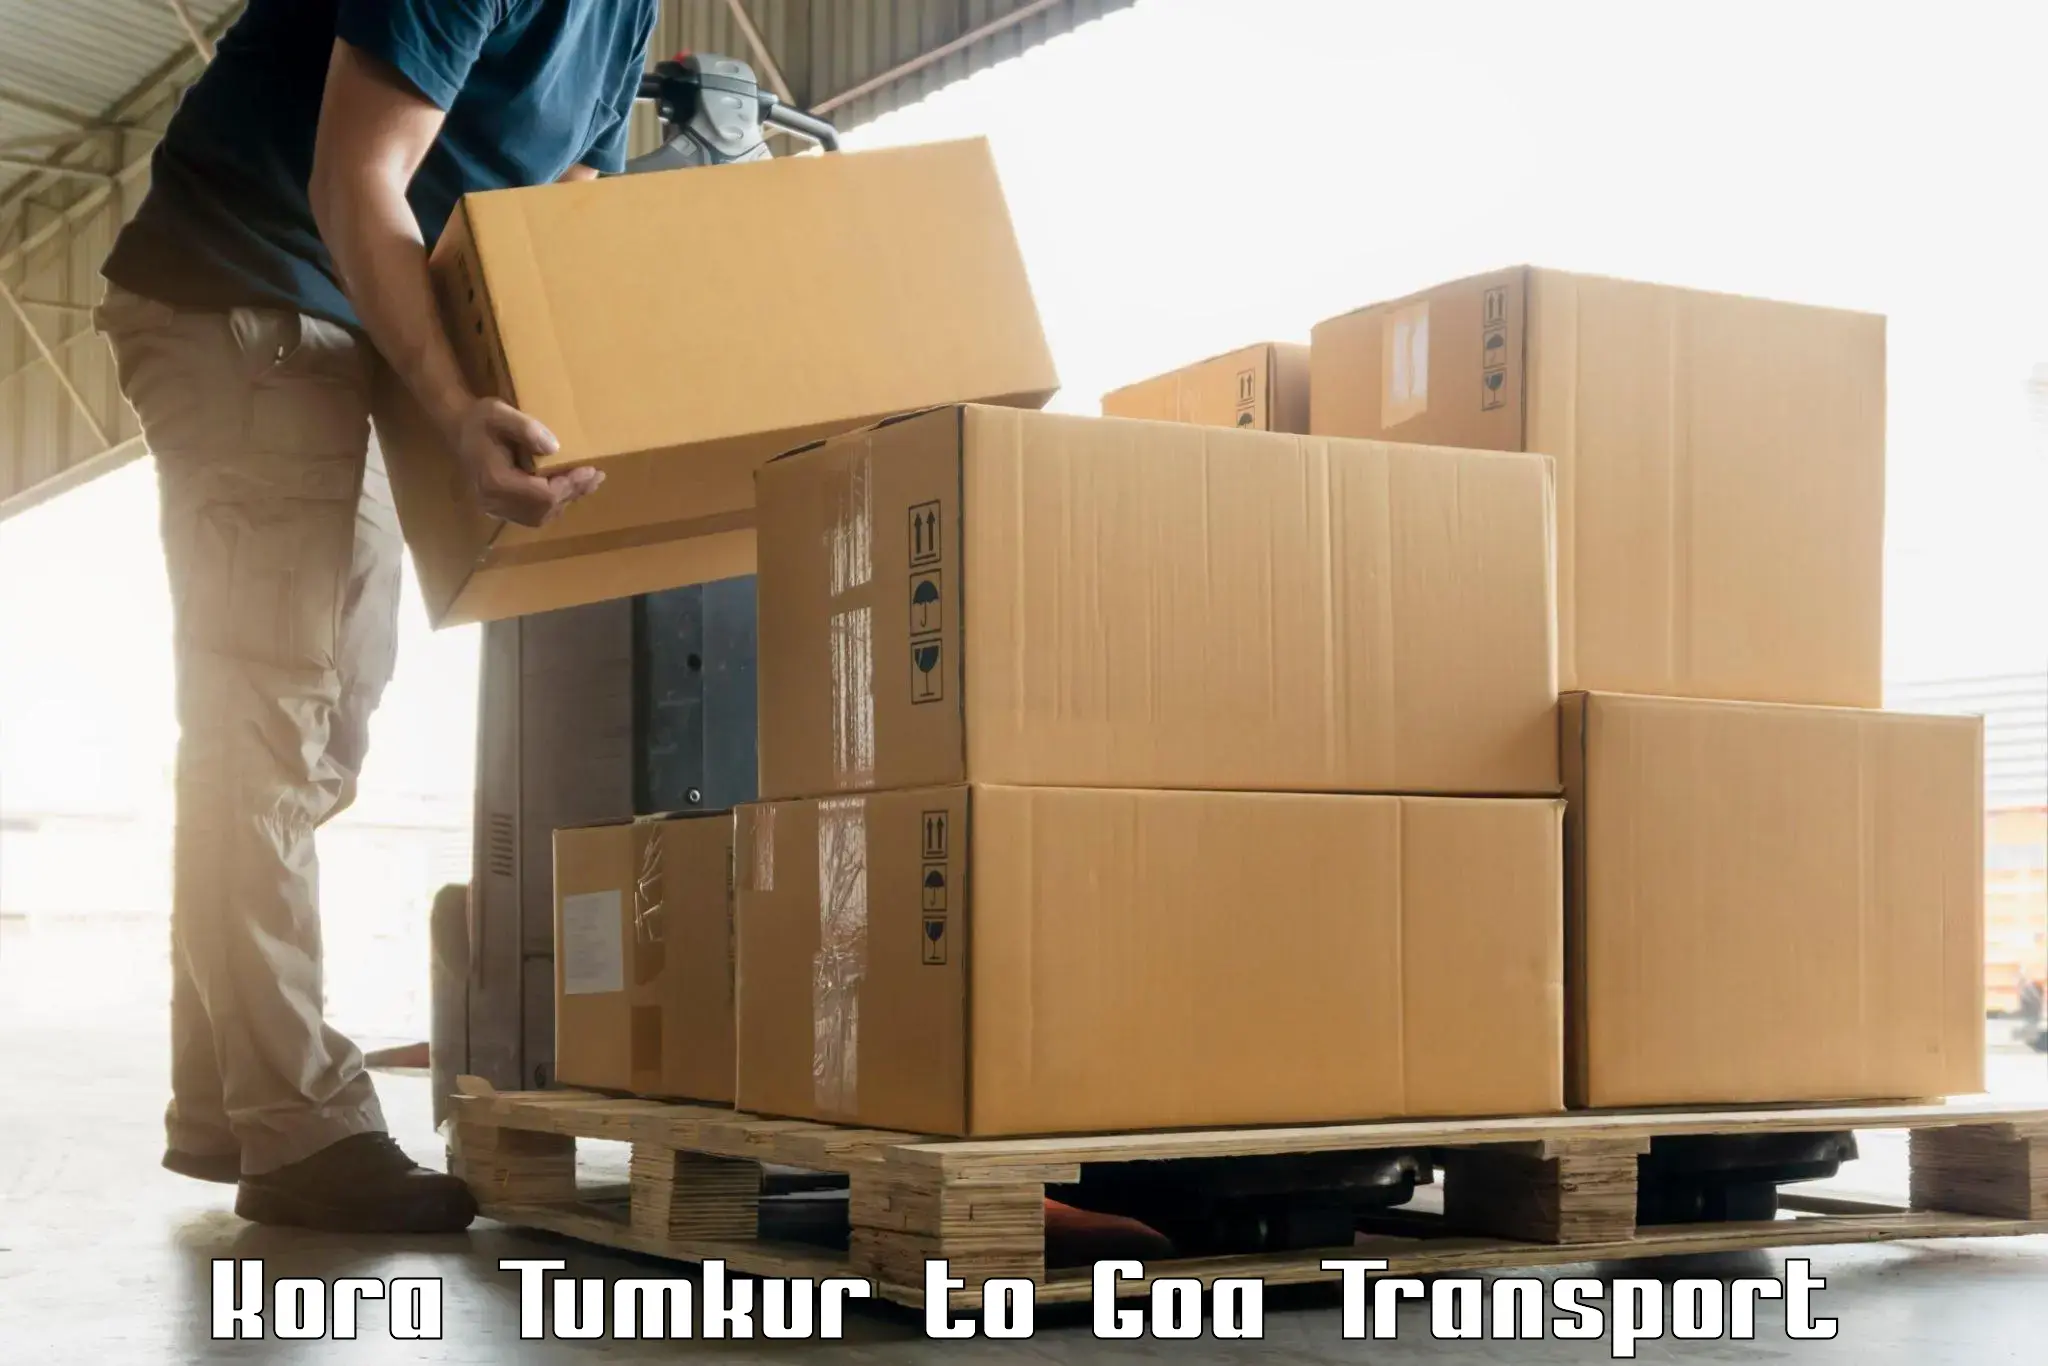 Two wheeler parcel service Kora Tumkur to NIT Goa